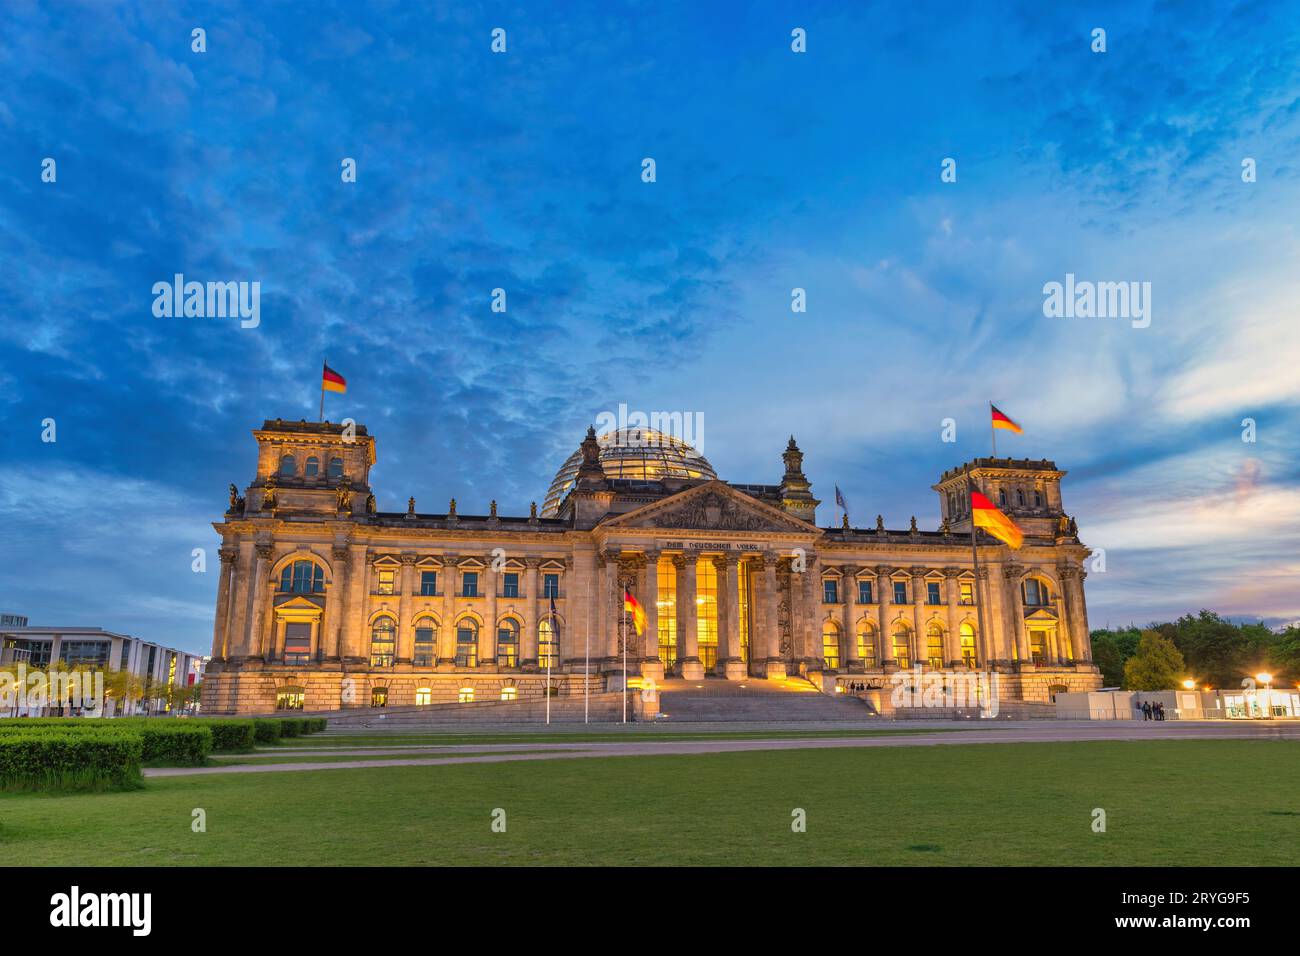 Berlin Allemagne, ville de nuit au Reichstag Parlement allemand Banque D'Images